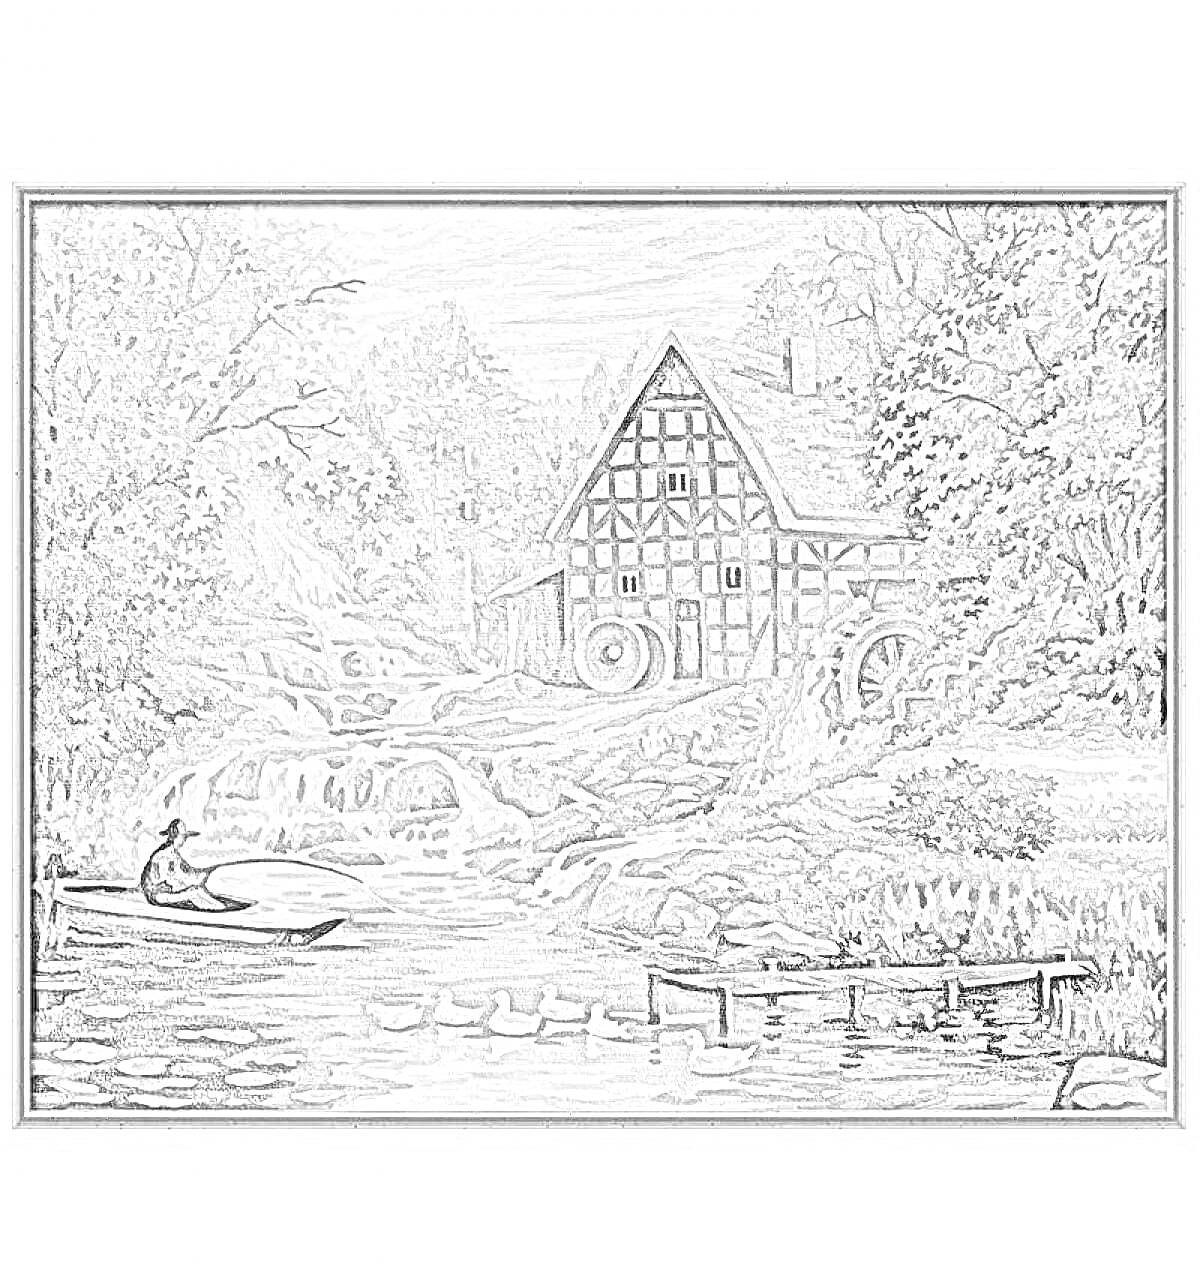 Раскраска Дом с водяной мельницей на фоне леса, водопад, река с утками, лодка с человеком возле причала